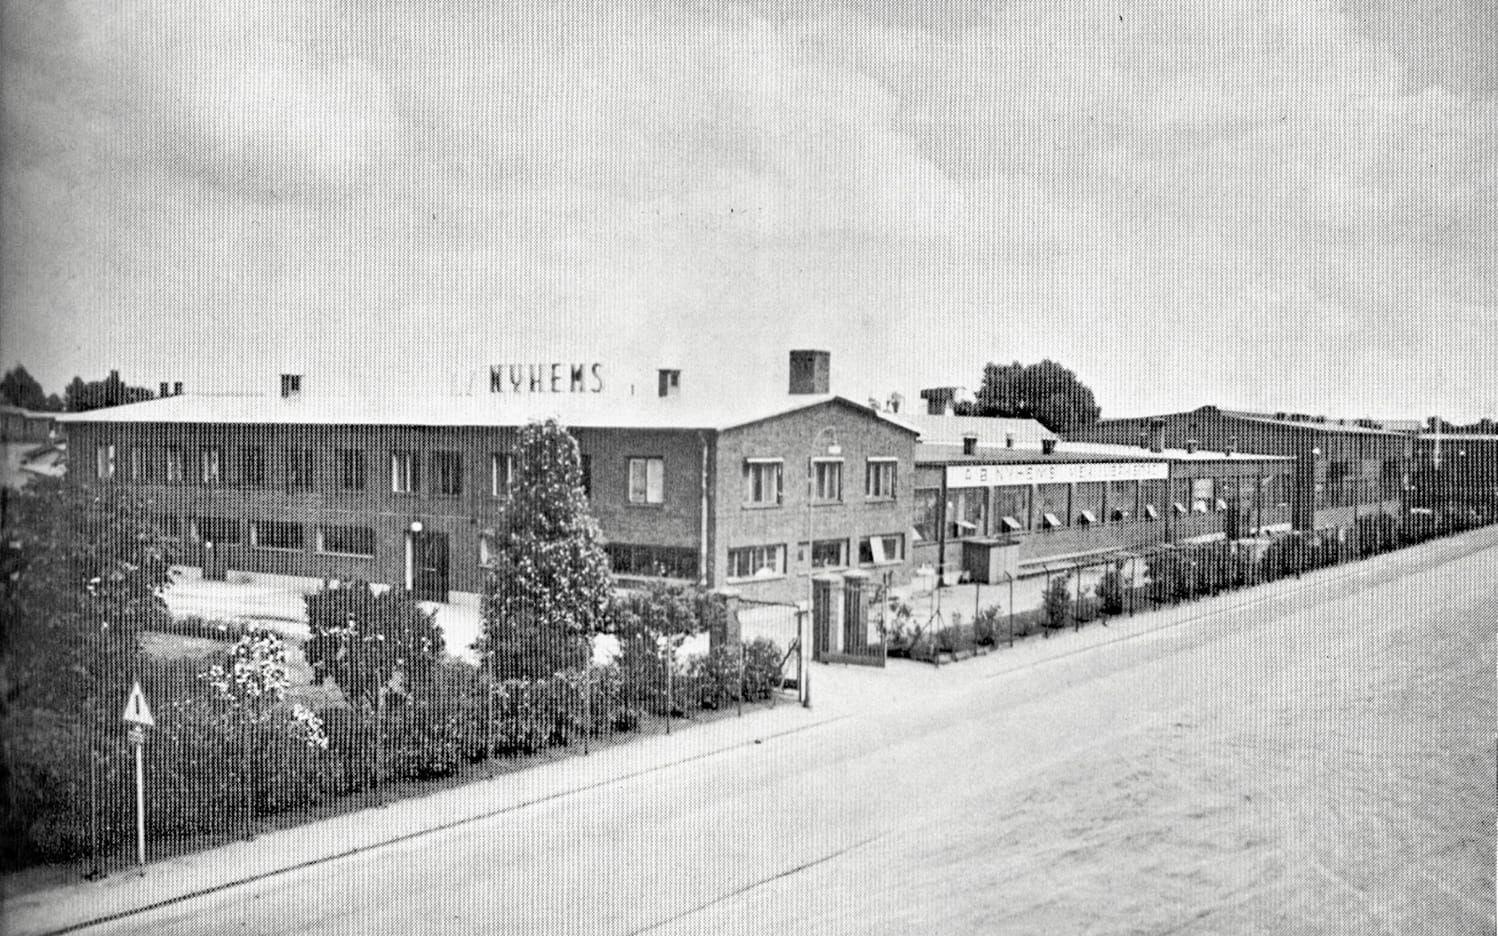 … och efter det byggdes en ny fabrik upp på en tomt vid Knäredsgatan. Då den togs i bruk 1938 beskrevs den som en förebild i modernitet och god arbetsmiljö för de anställda. 